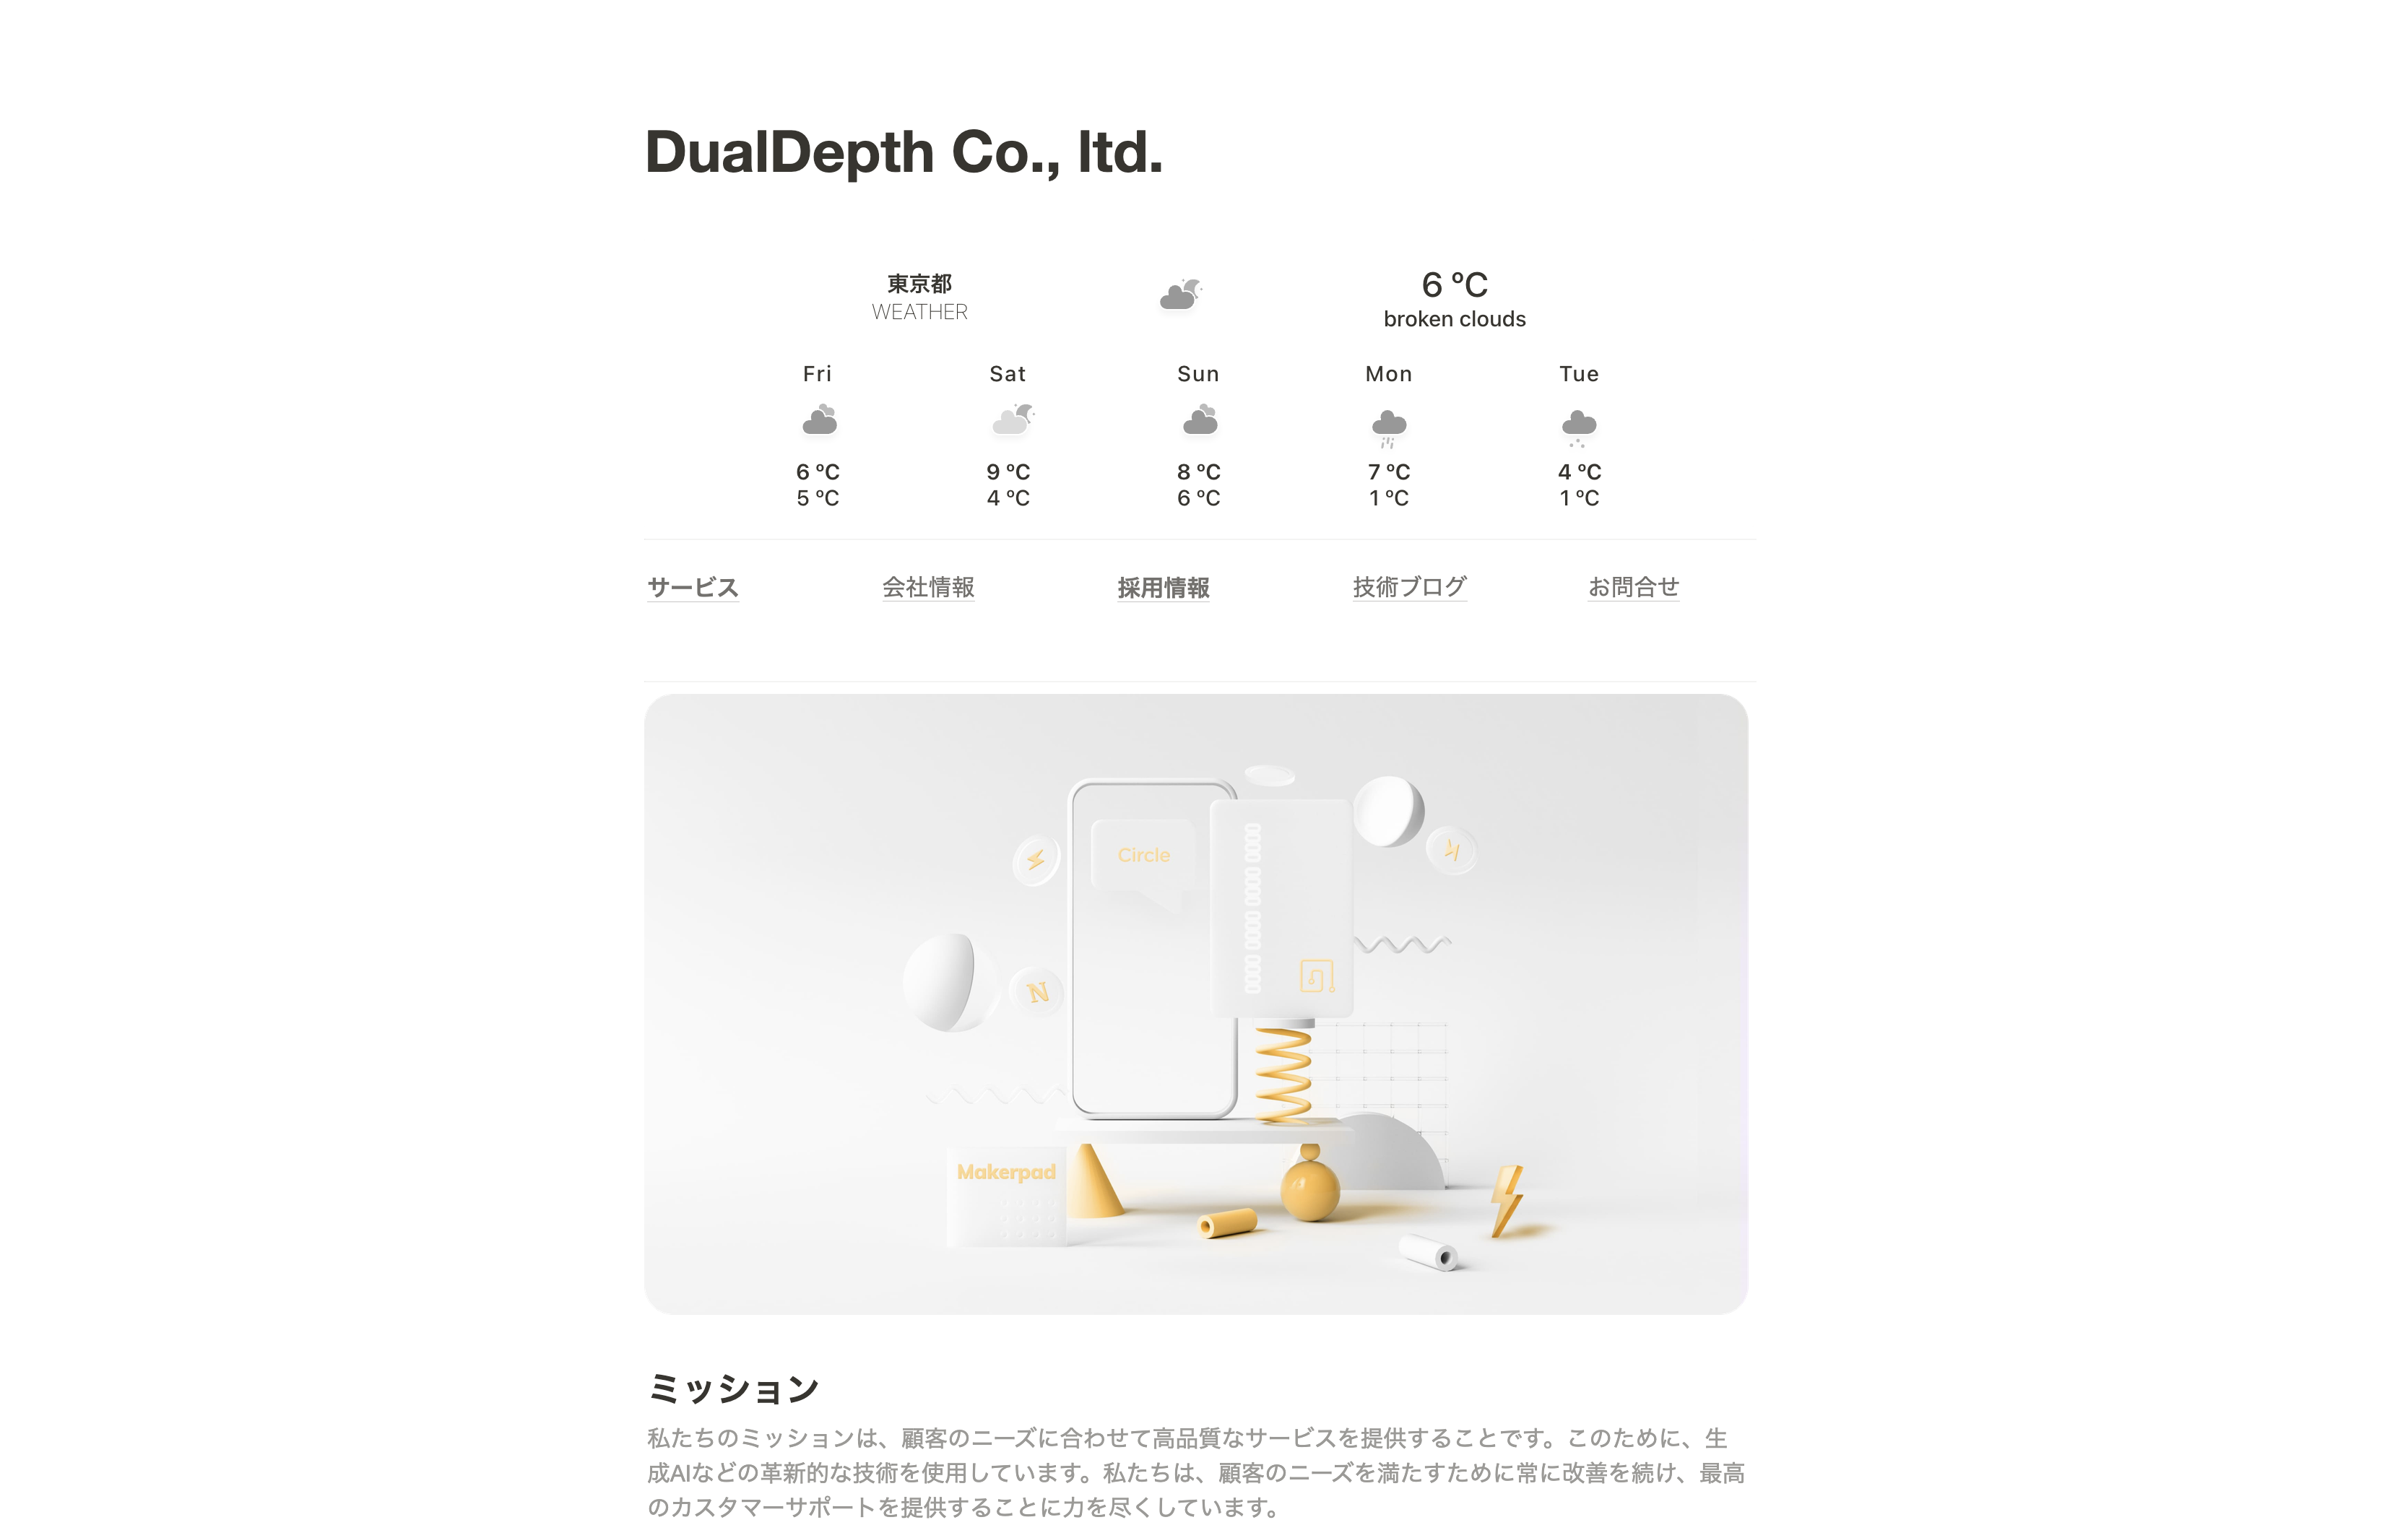 Dual Depth株式会社のDual Depth株式会社:ネットワーク構築サービス